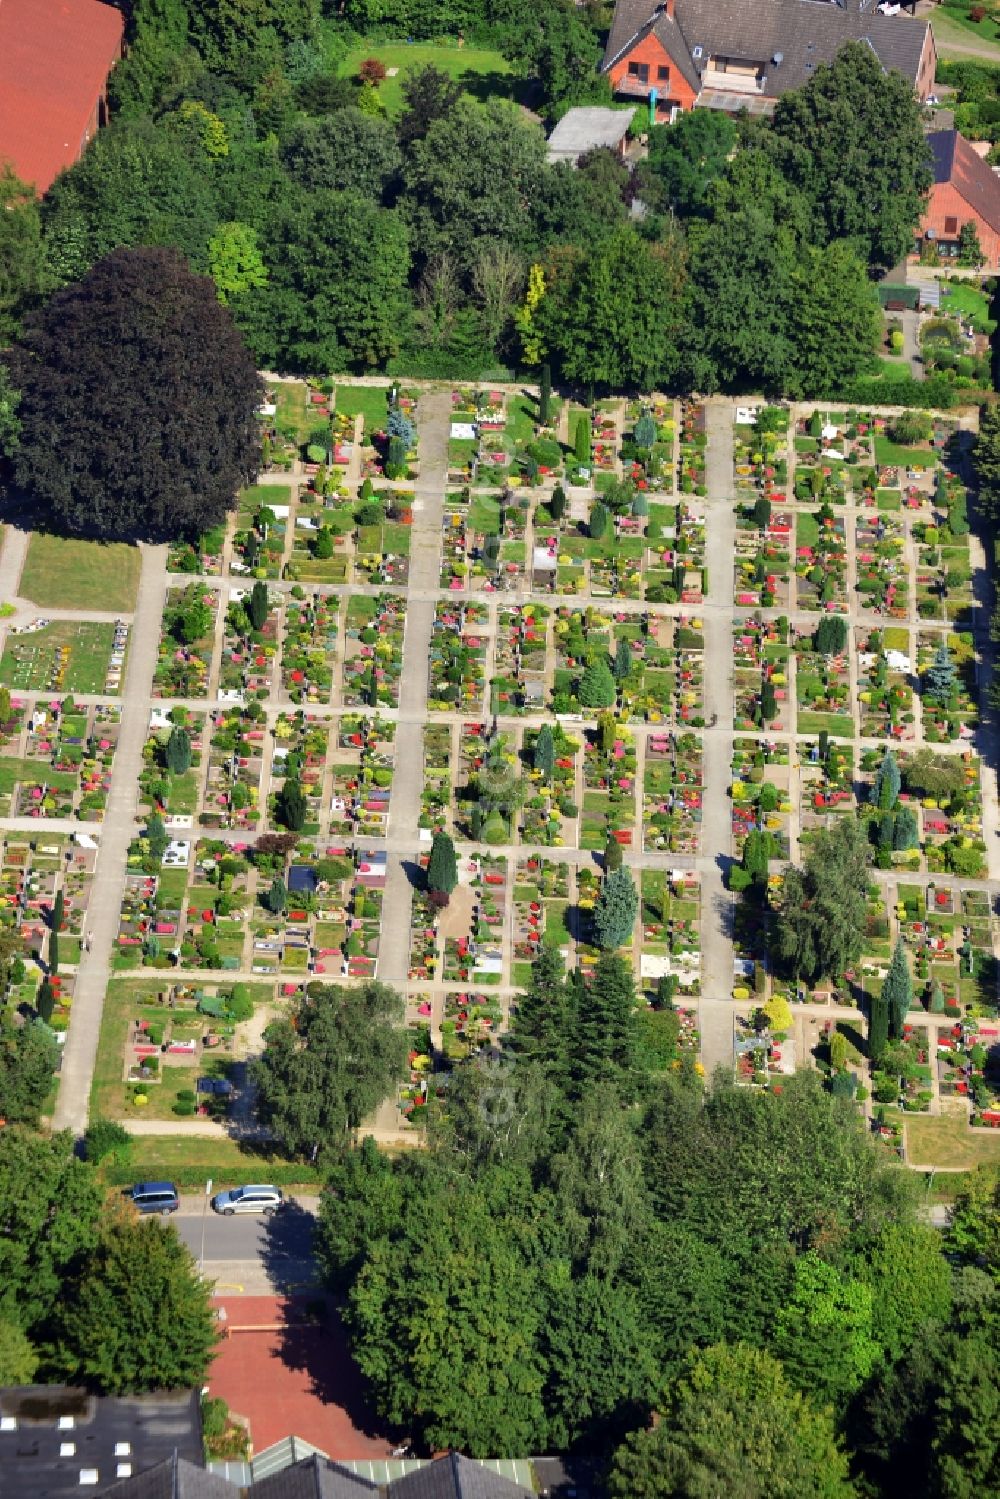 Aerial image Hambergen - Cemetery in Hambergen in Lower Saxony